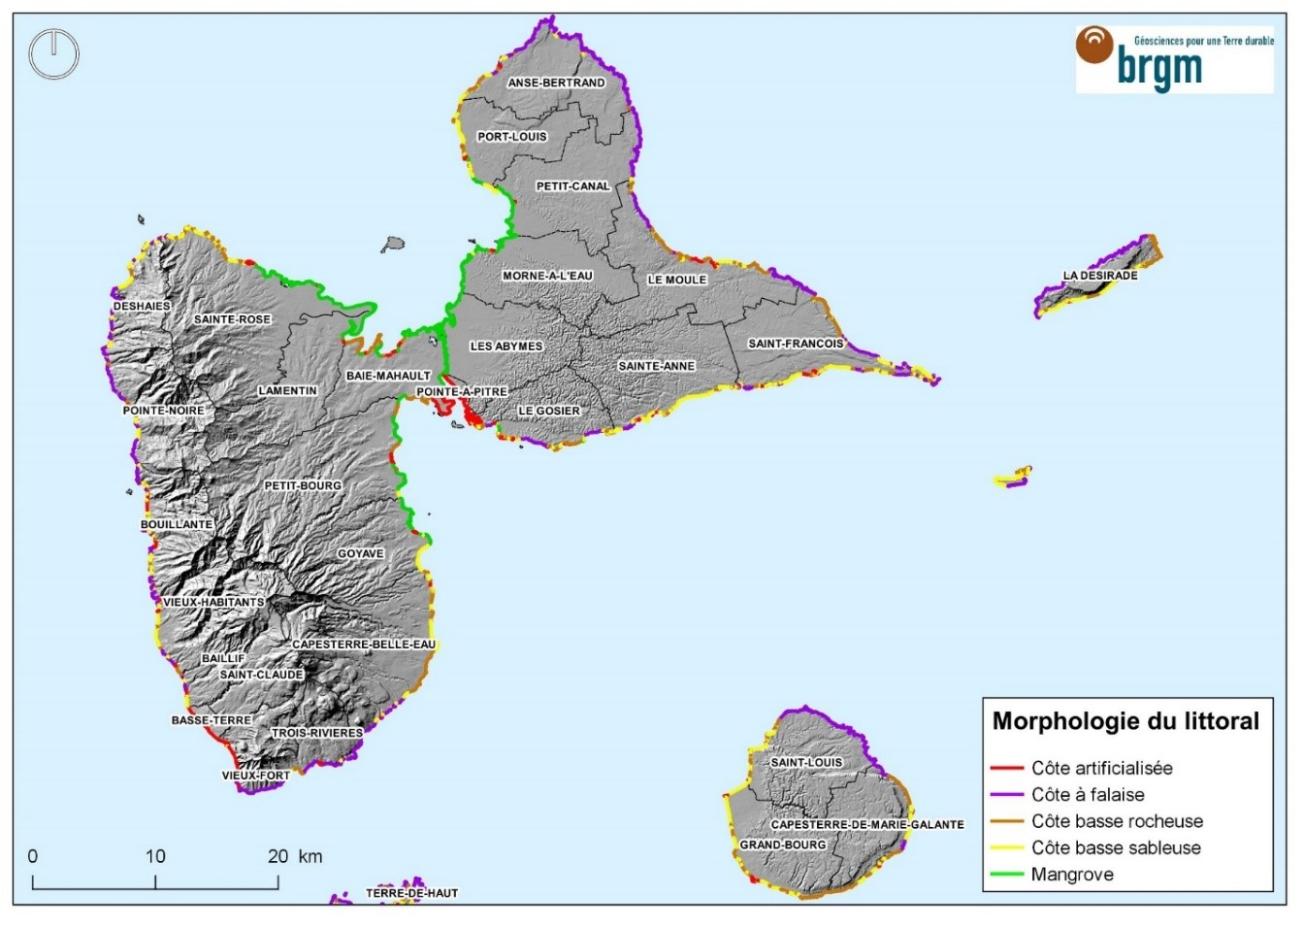 Morphologie du littoral de l’archipel de la Guadeloupe 